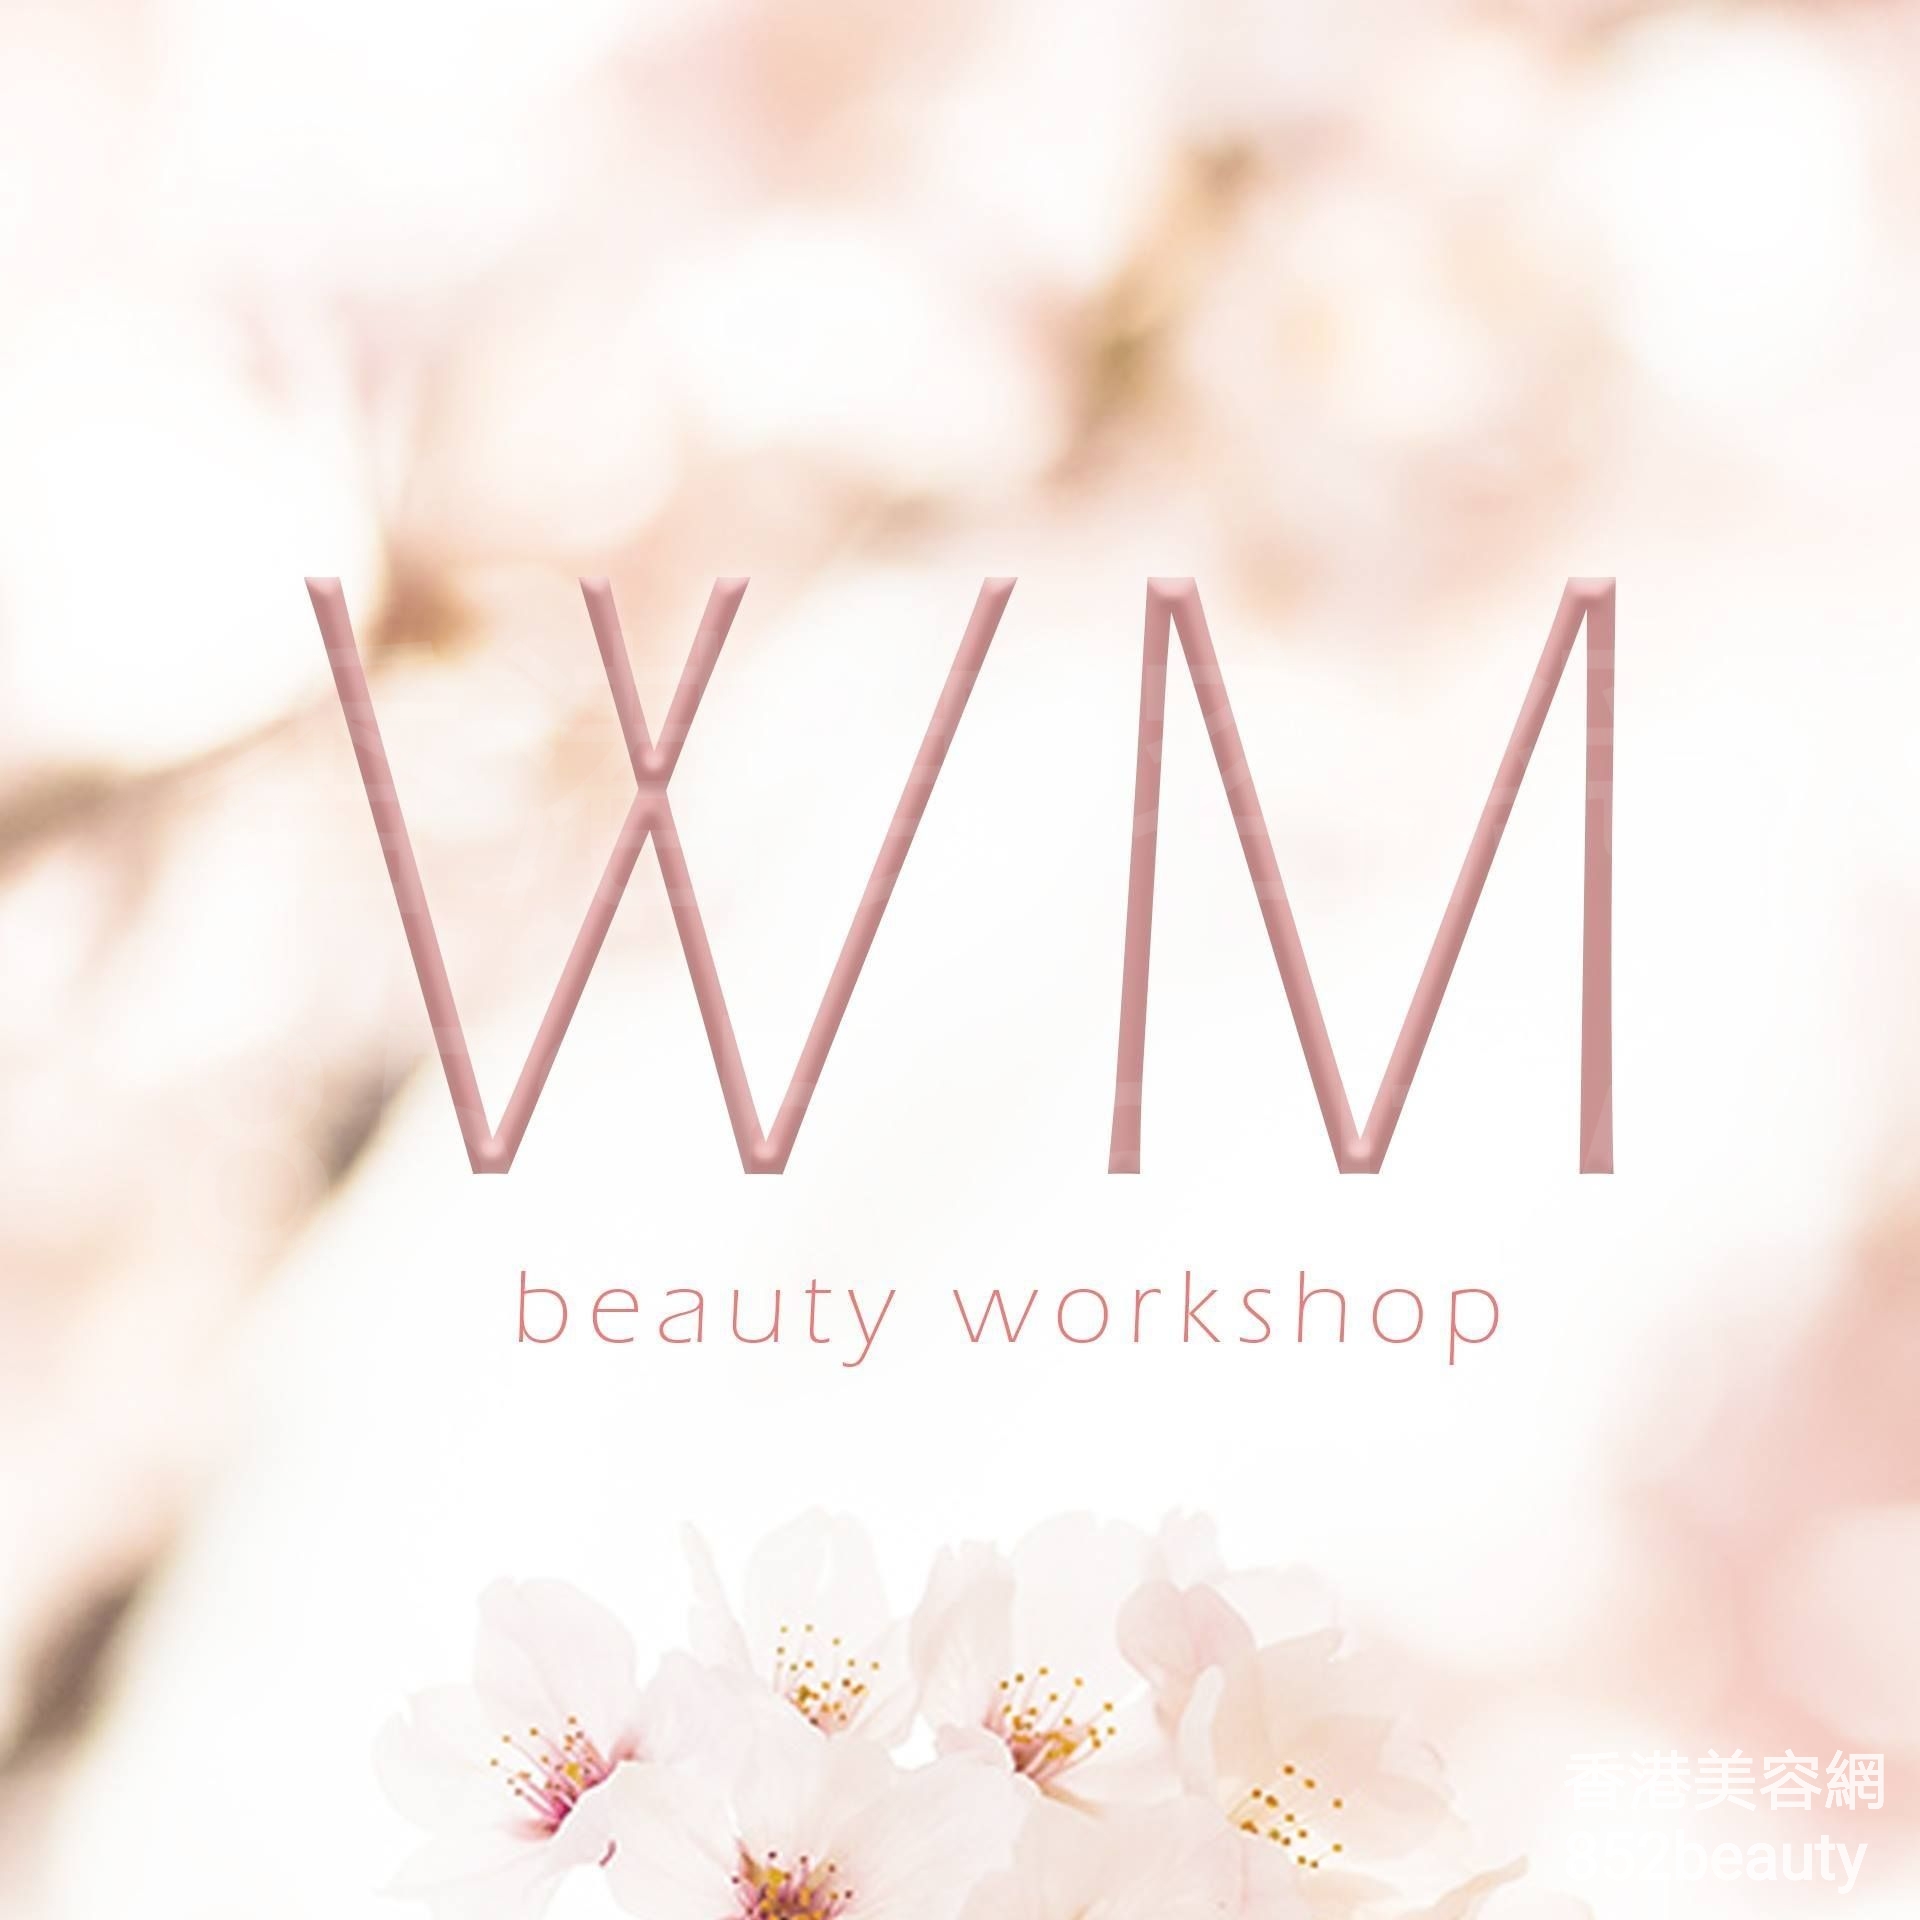 香港美容網 Hong Kong Beauty Salon 美容院 / 美容師: WM Beauty Workshop